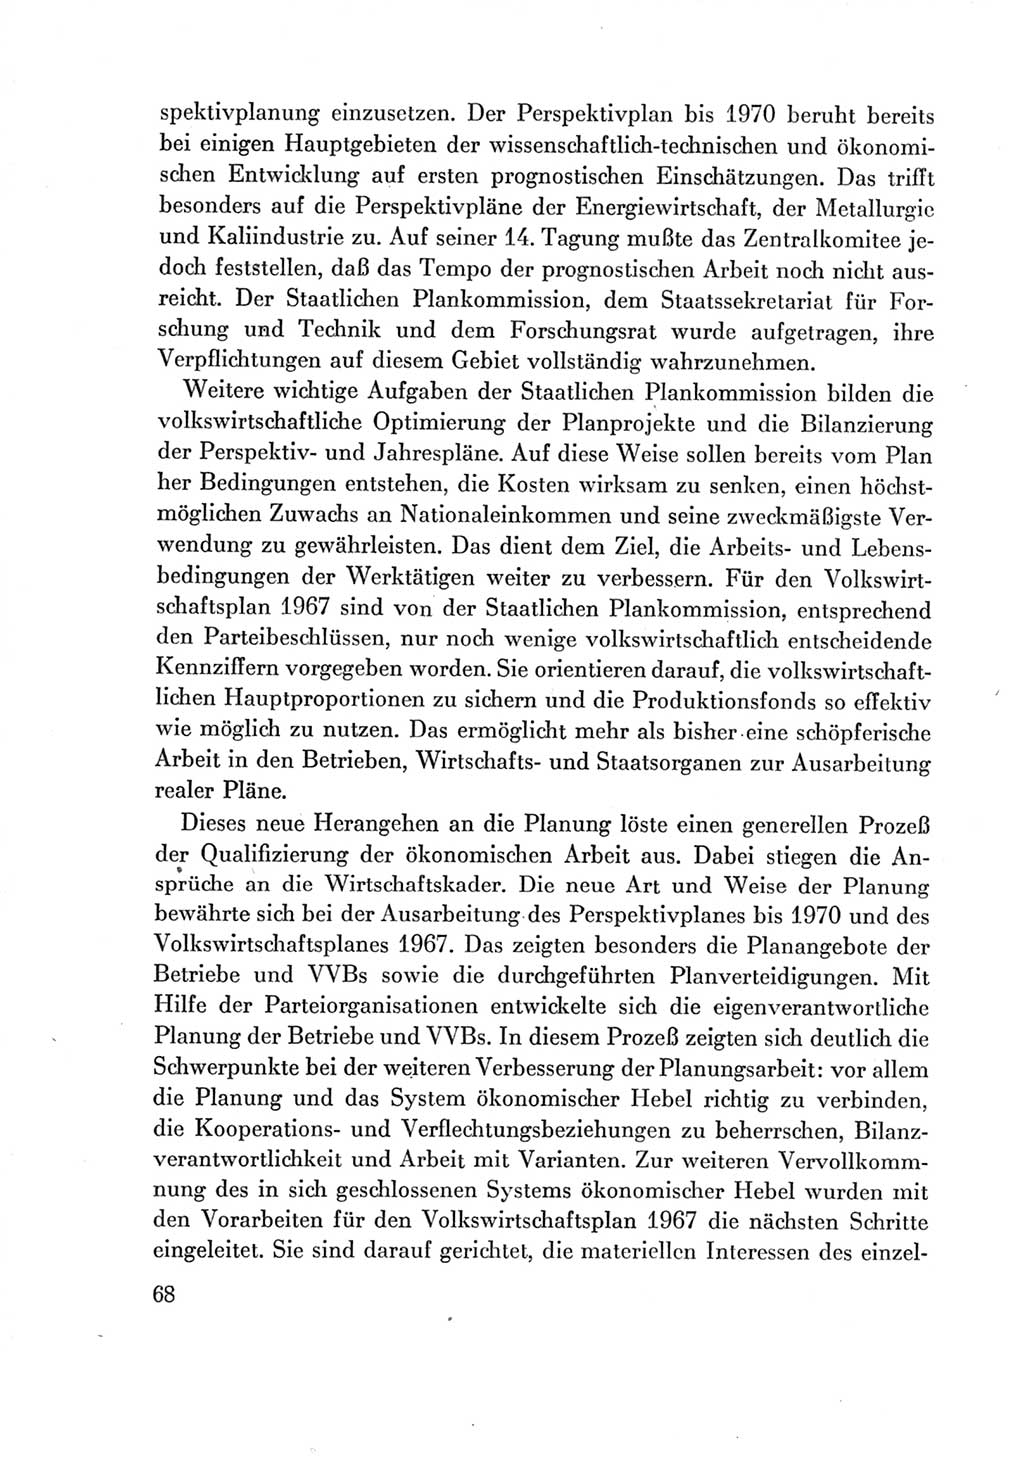 Protokoll der Verhandlungen des Ⅶ. Parteitages der Sozialistischen Einheitspartei Deutschlands (SED) [Deutsche Demokratische Republik (DDR)] 1967, Band Ⅳ, Seite 68 (Prot. Verh. Ⅶ. PT SED DDR 1967, Bd. Ⅳ, S. 68)